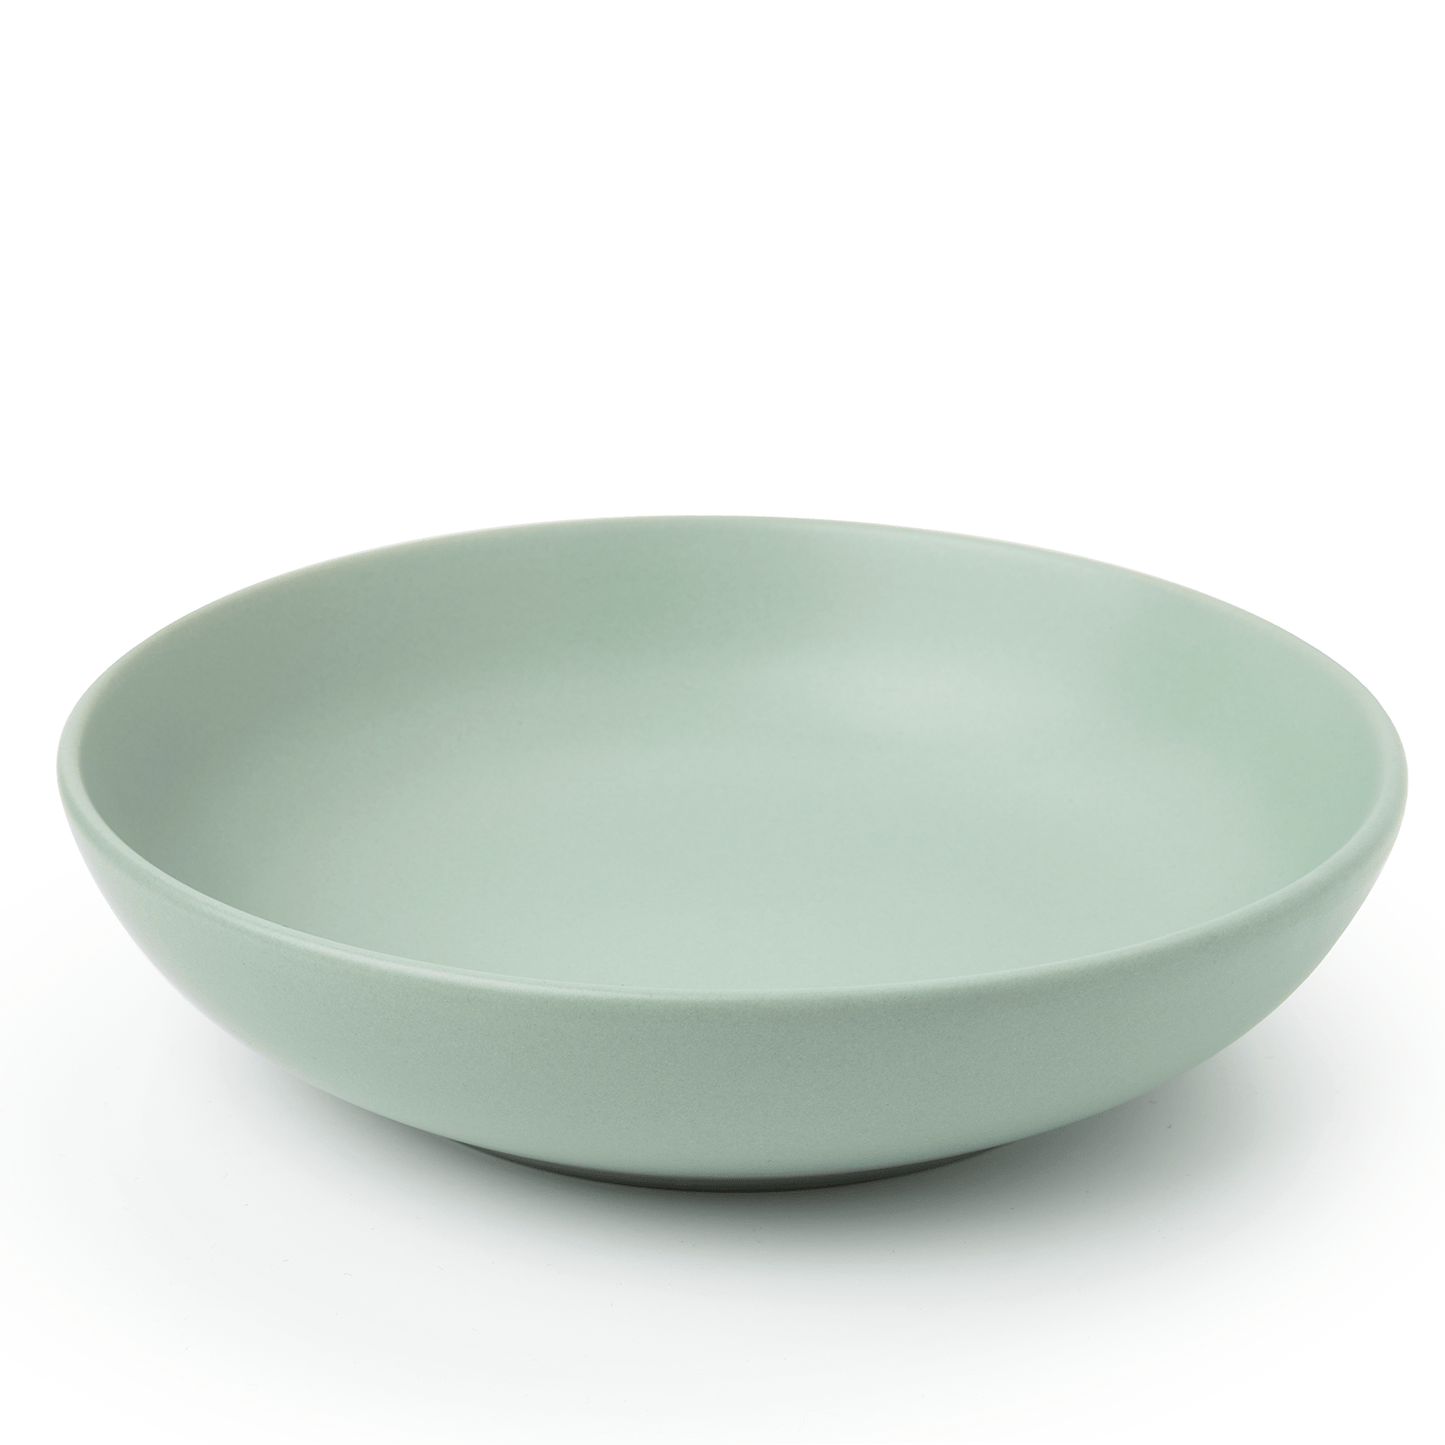 Kitchenware  -  Sabichi Sage Matt Pasta Bowl  -  50153575